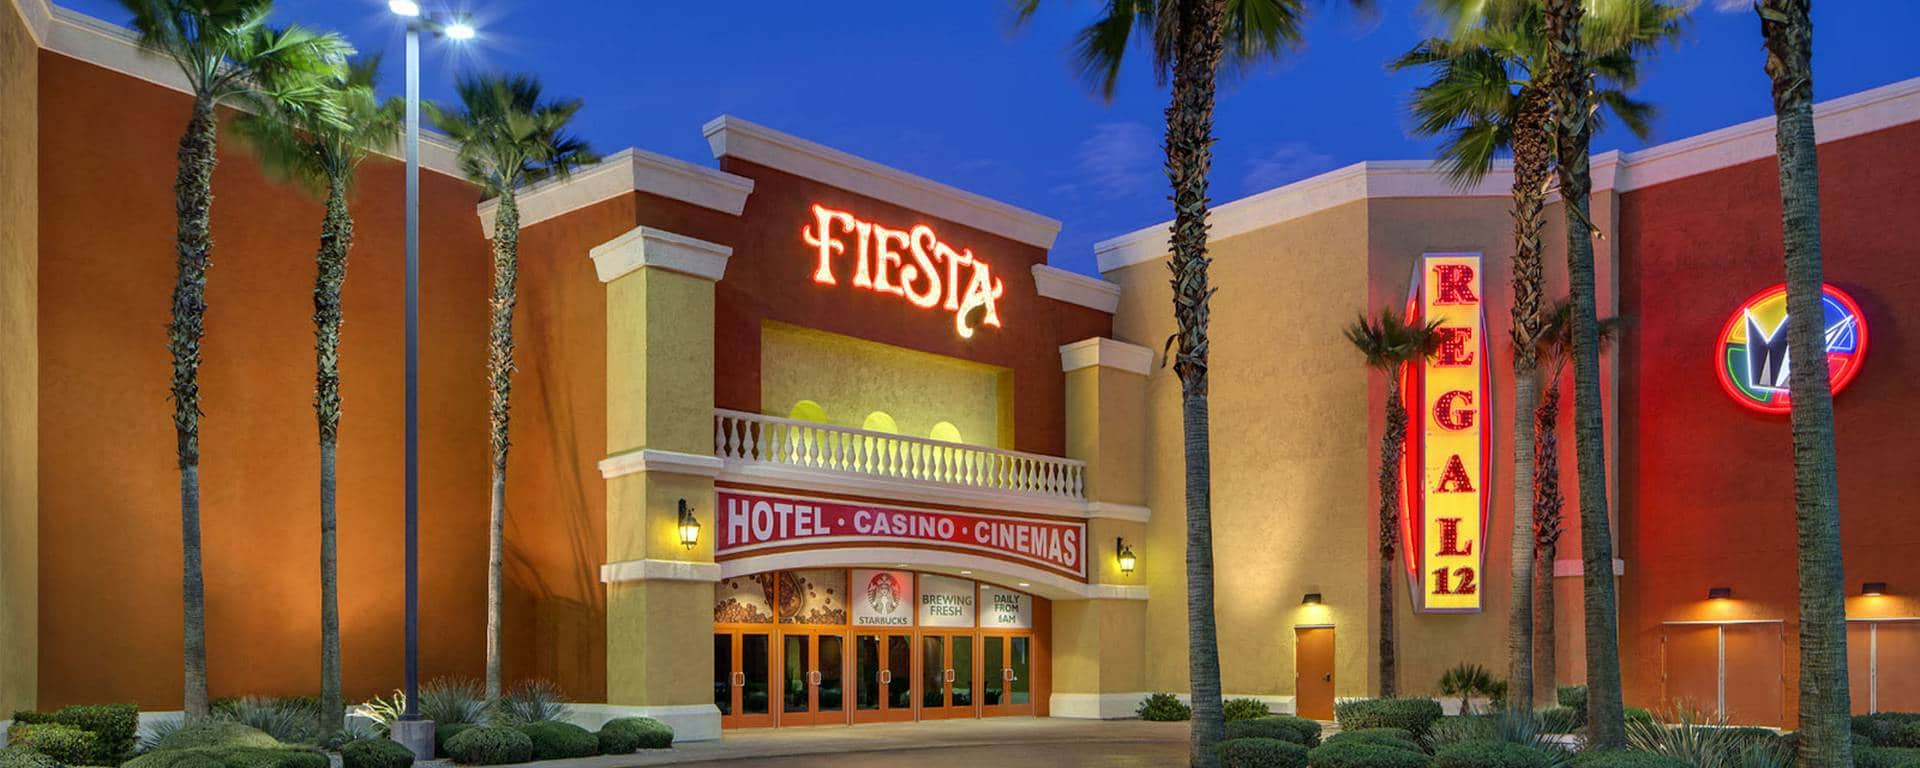 las vegas casino deals 2019